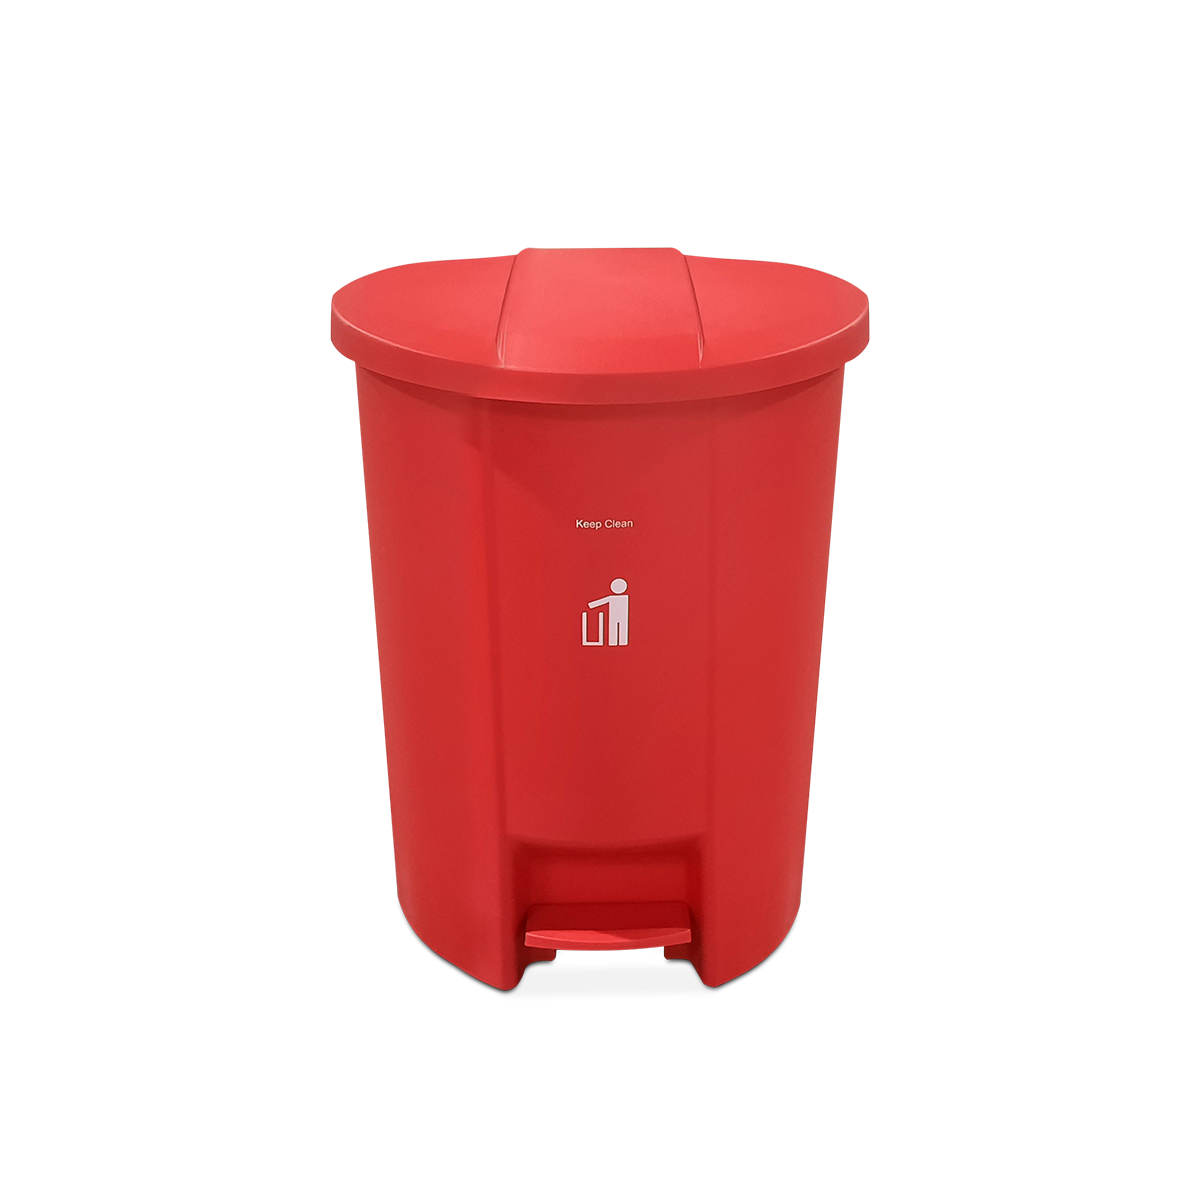 ถังขยะพลาสติก ขนาด 50 ลิตร แบบมีเท้าเหยียบ สีแดง